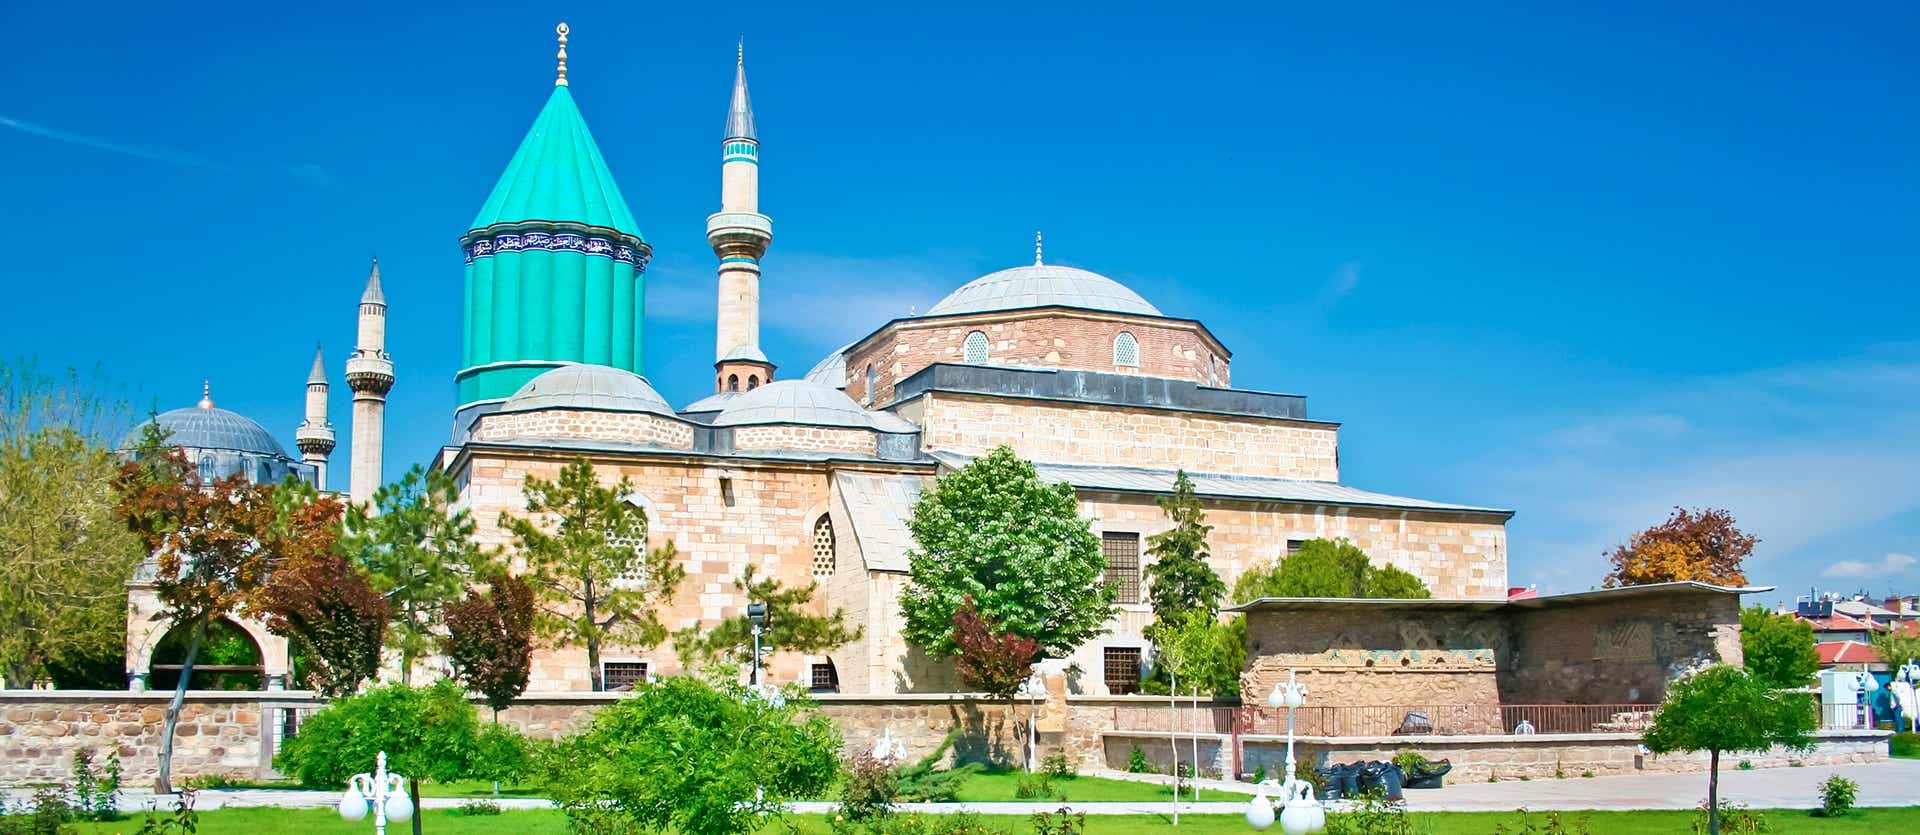 Mezquita de Mevlana <span class="iconos separador"></span> Konya